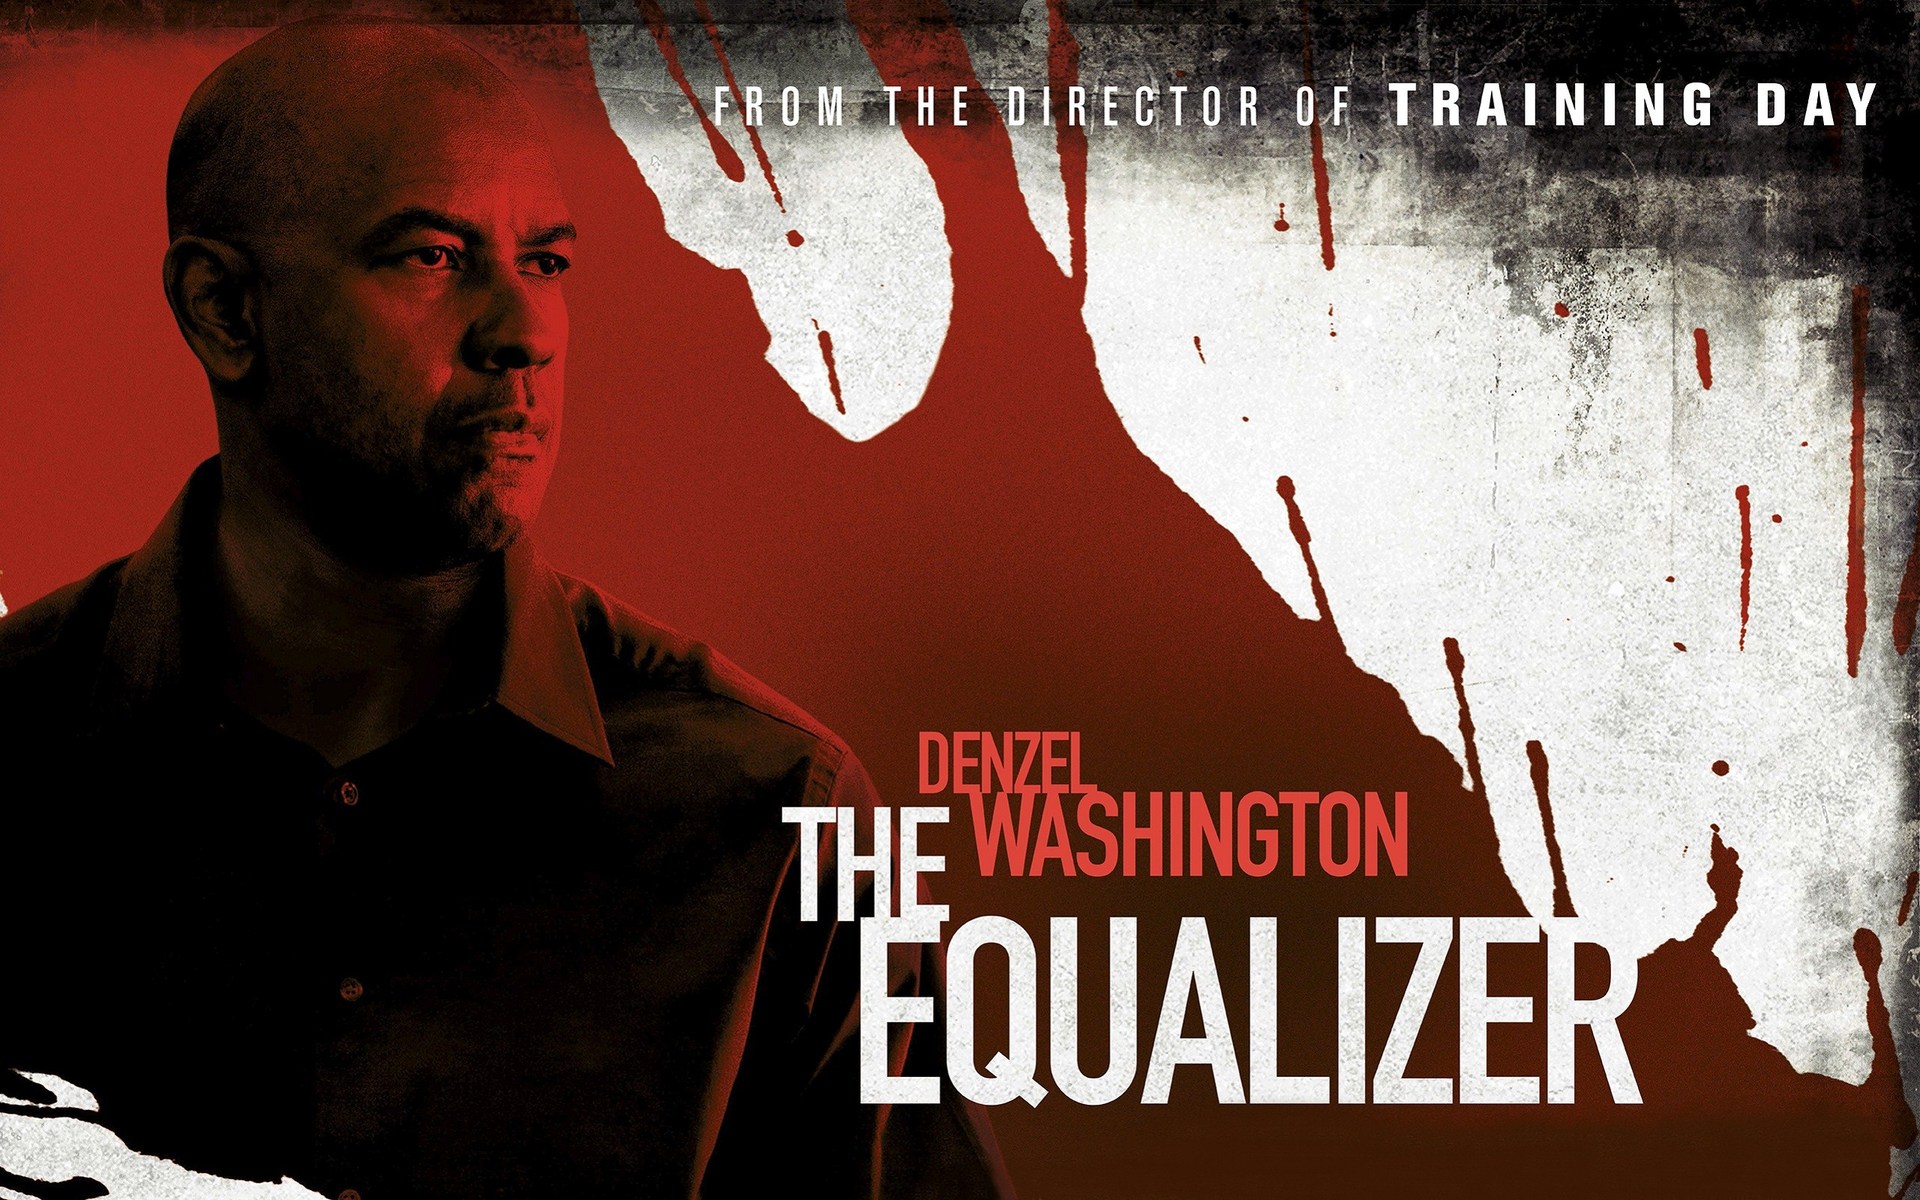 The-Equalizer-2014-Movie-Poster-fullsize-2.jpg